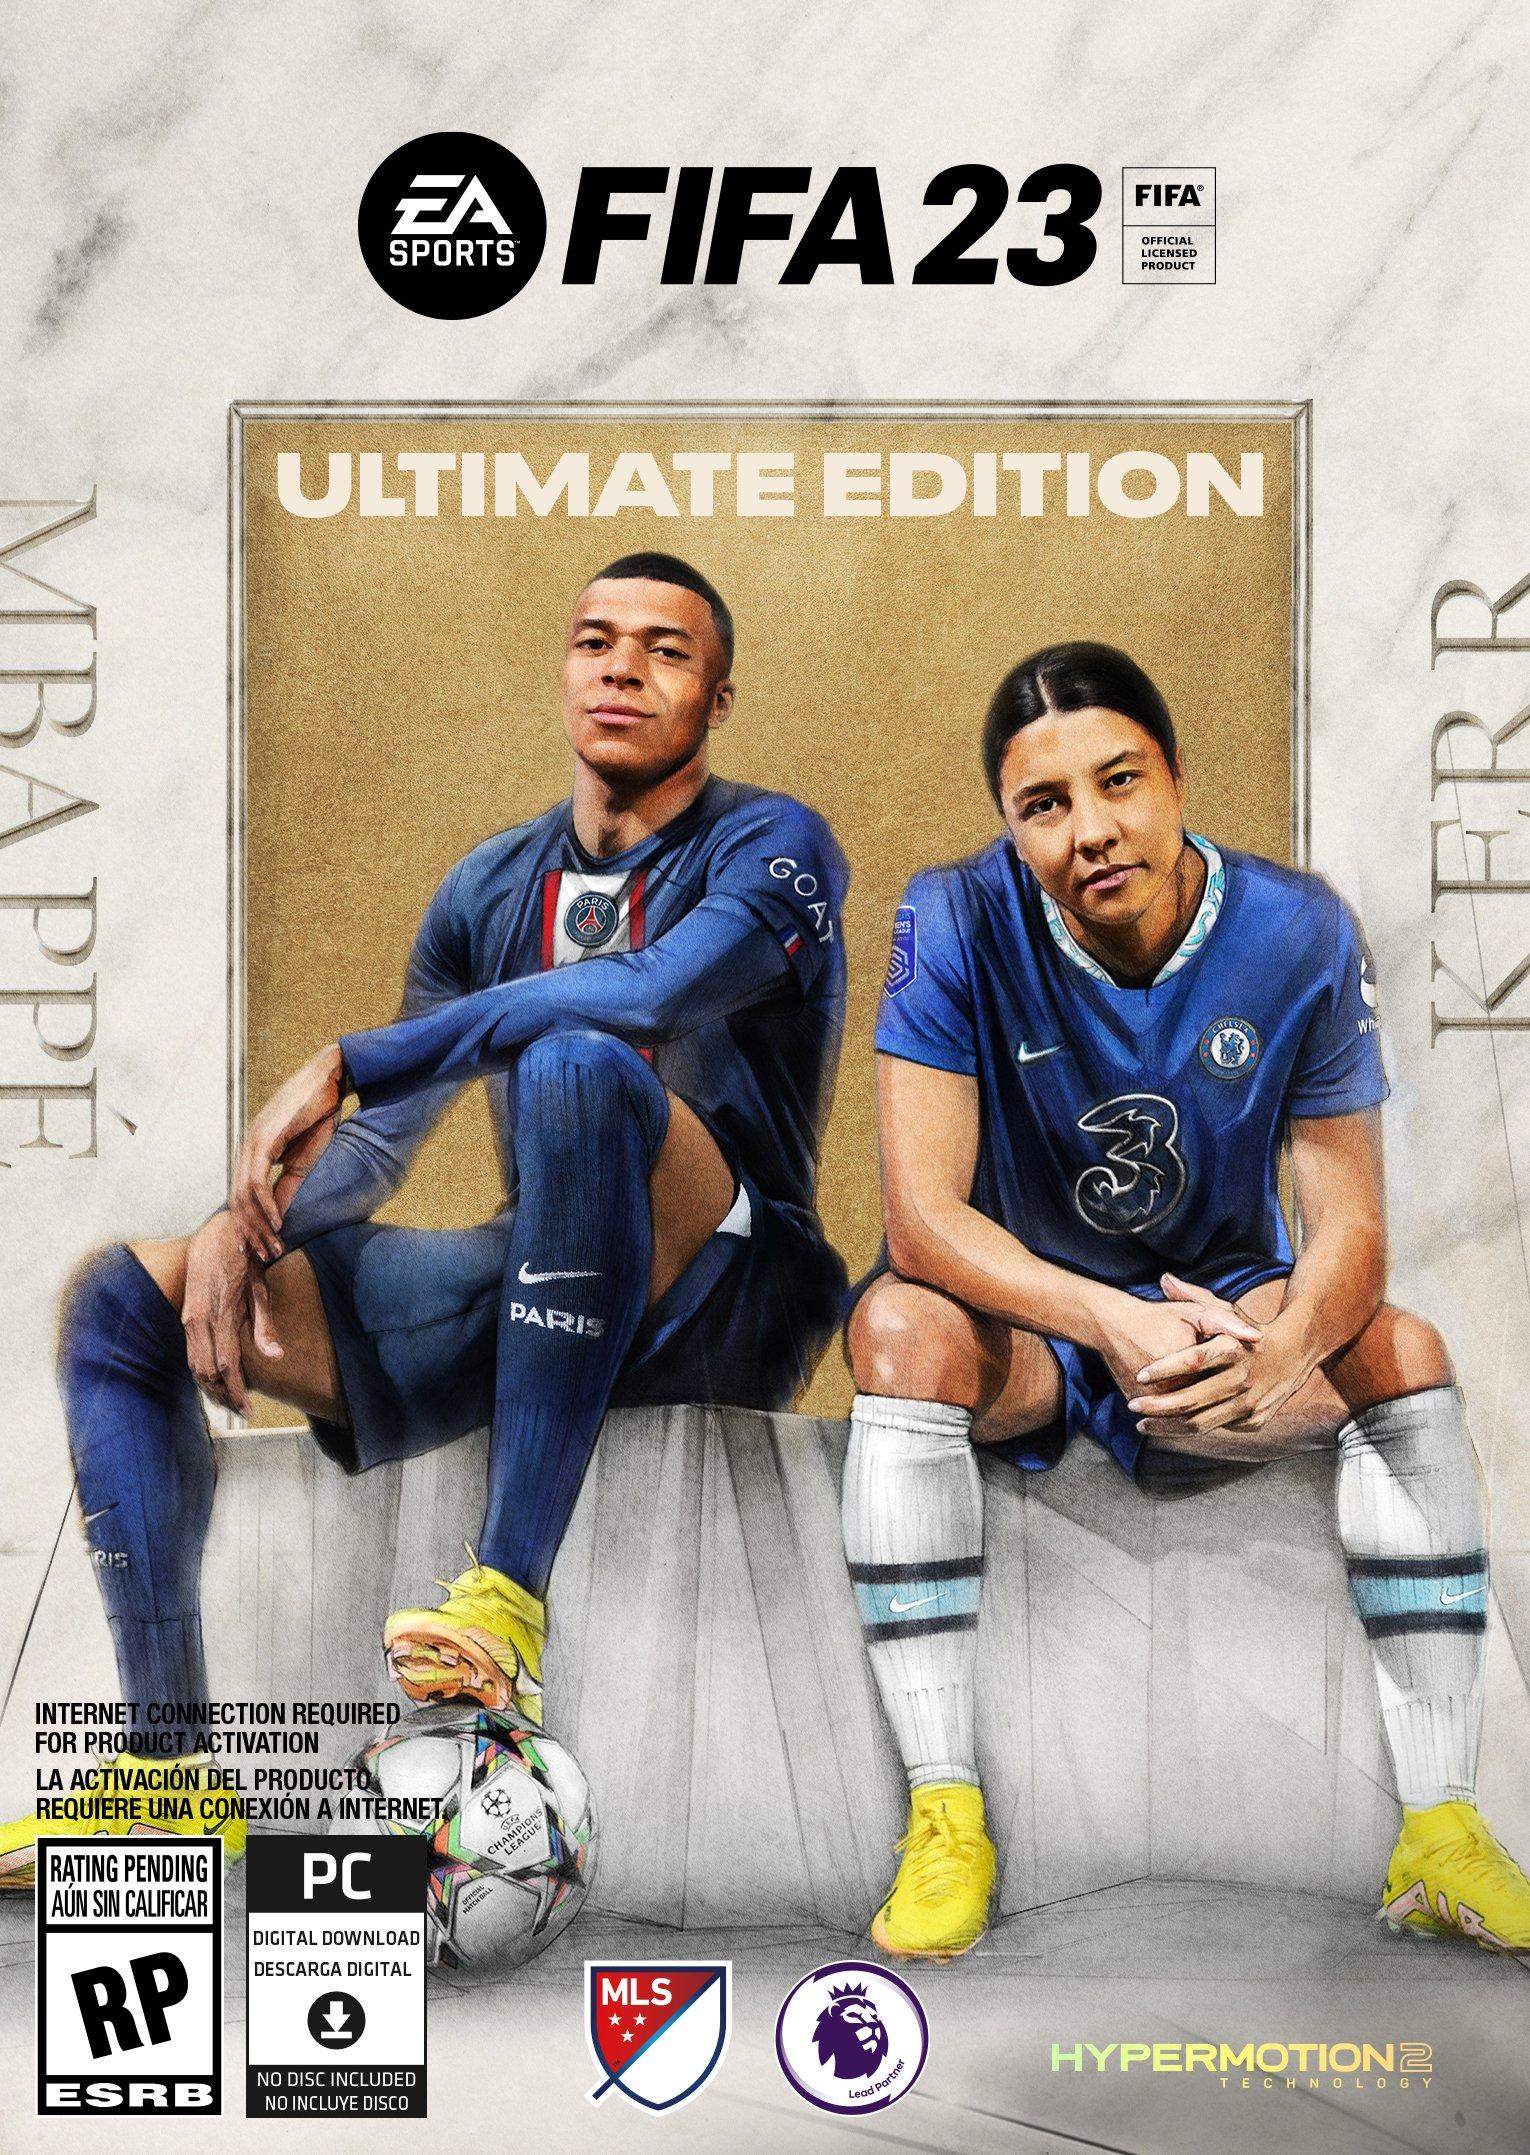 FIFA 23 Ultimate Edition trên PC Origin sắp ra mắt với những tính năng mới lạ và hấp dẫn. Đây là một phiên bản đặc biệt của trò chơi bóng đá FIFA